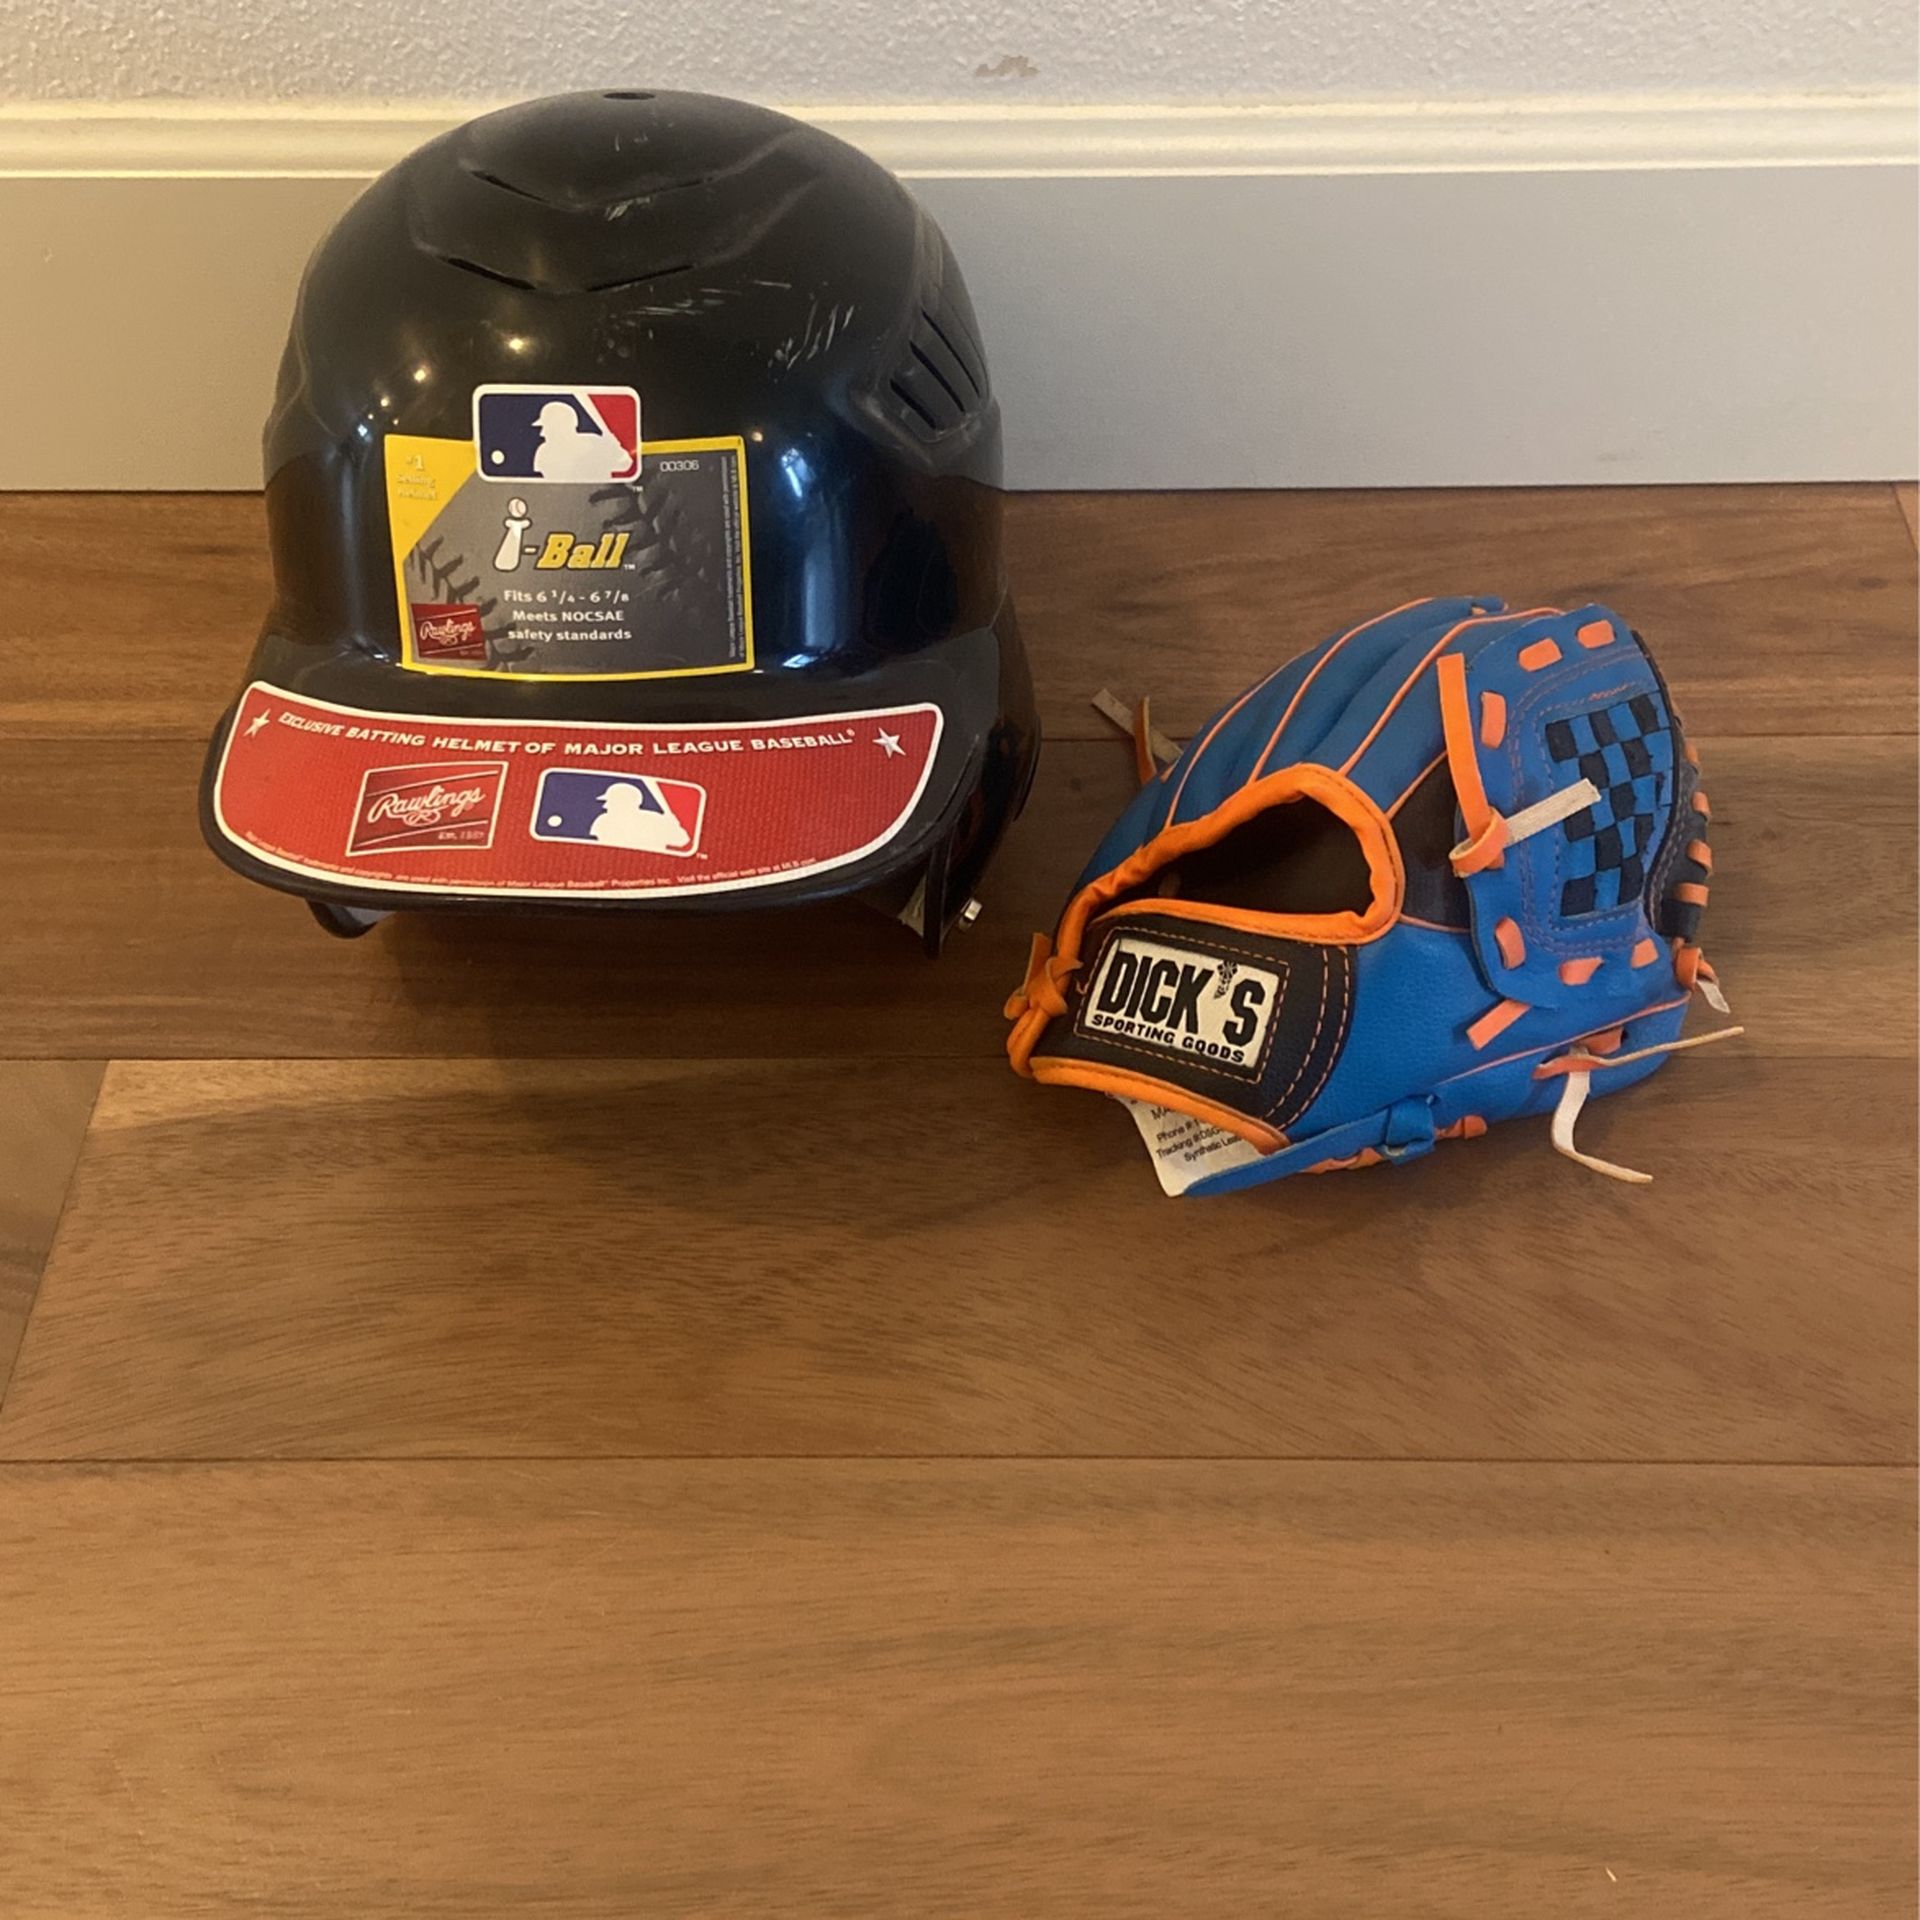 Kids Baseball Helmet & Glove